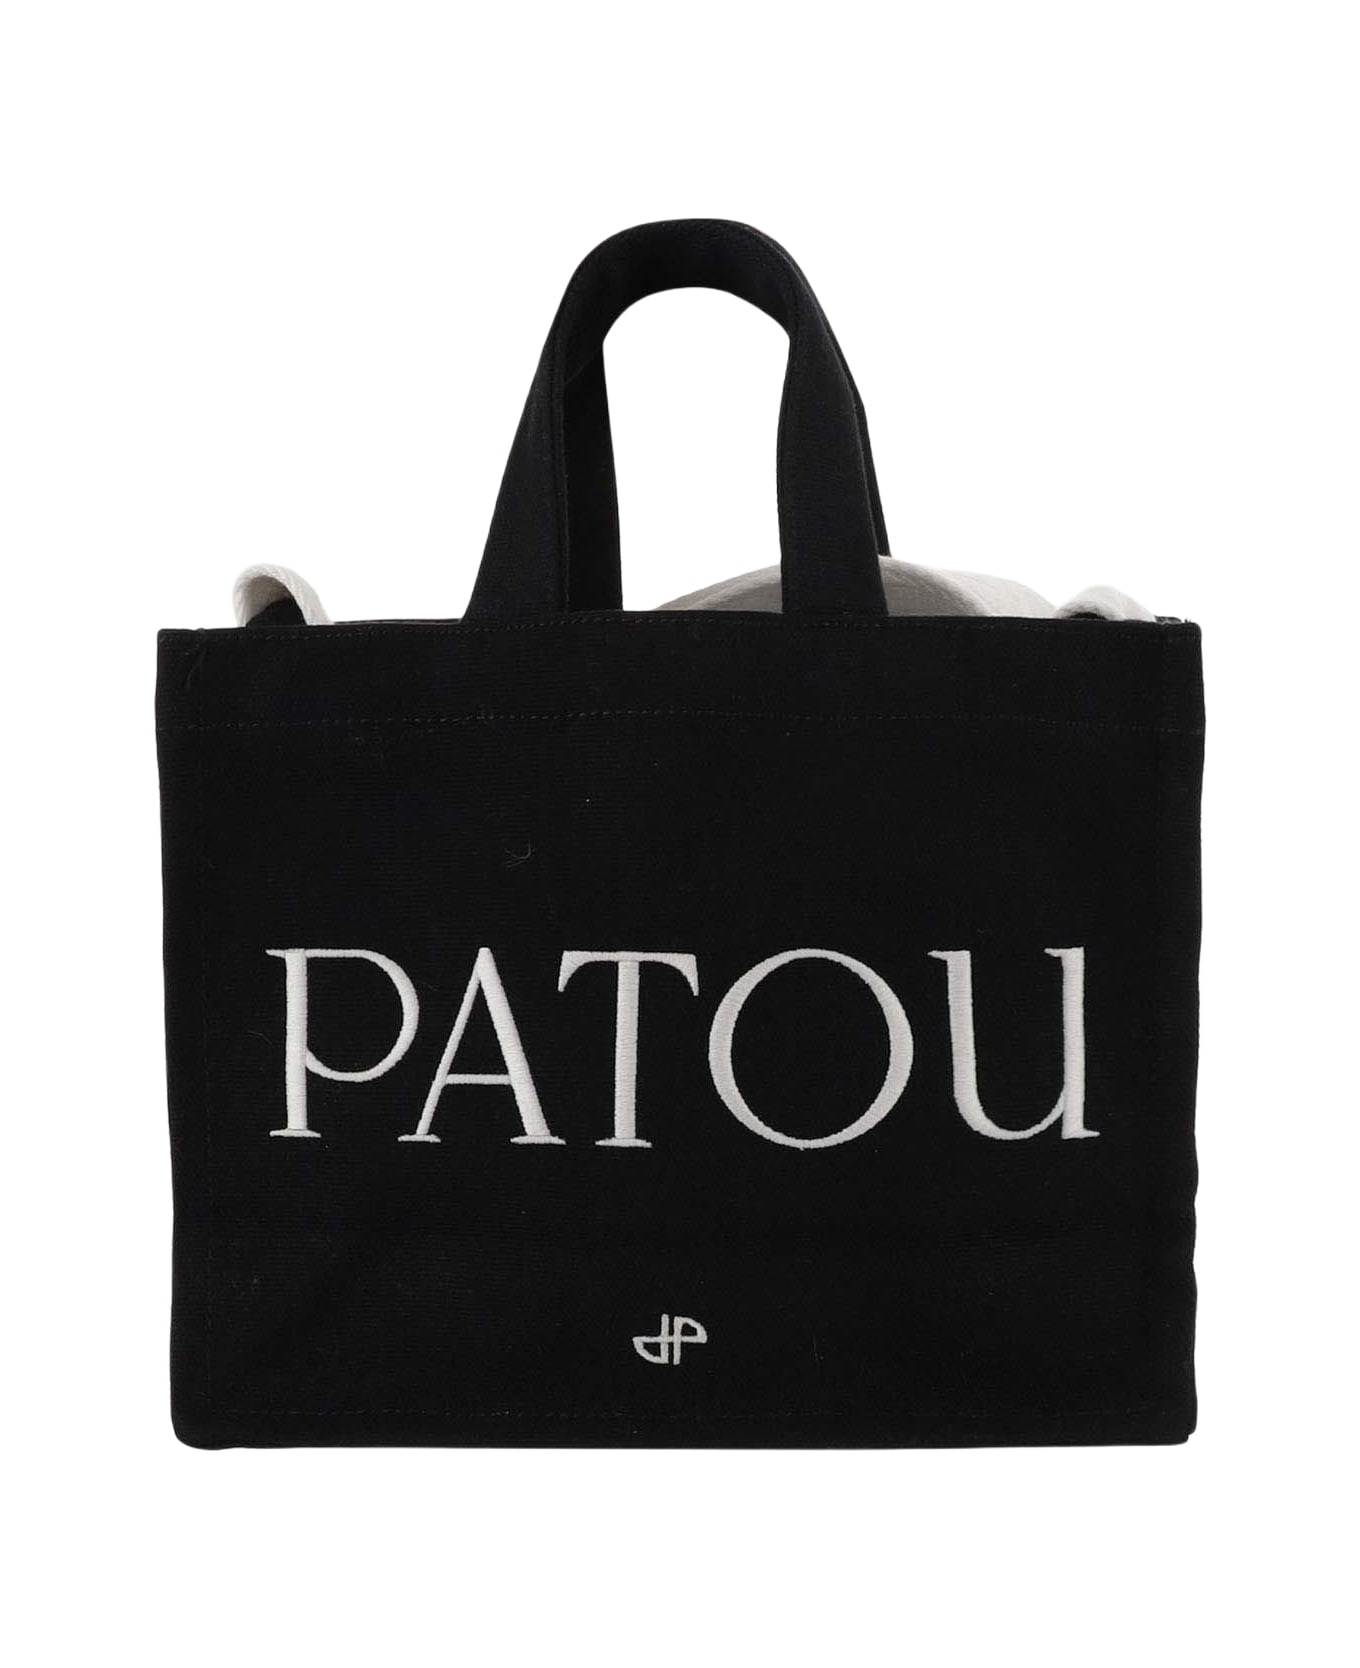 Patou Cotton Tote Bag - Black